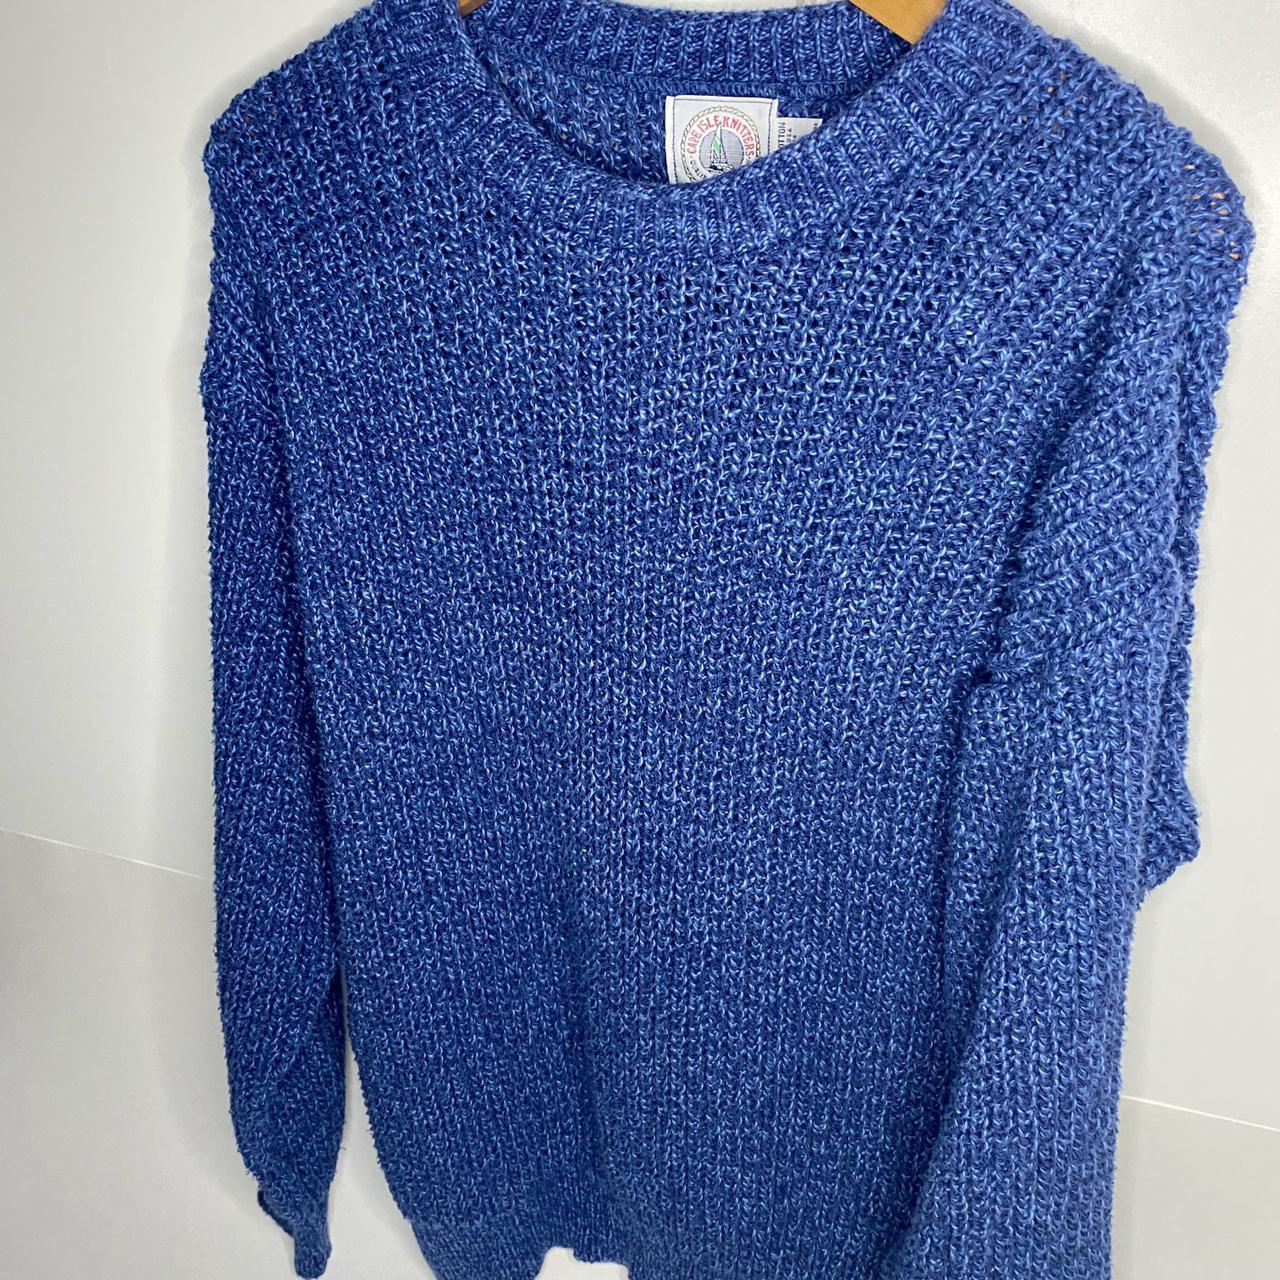 VTG 80's Cape Isle Knitters Chunky Sweater Men’s... - Depop